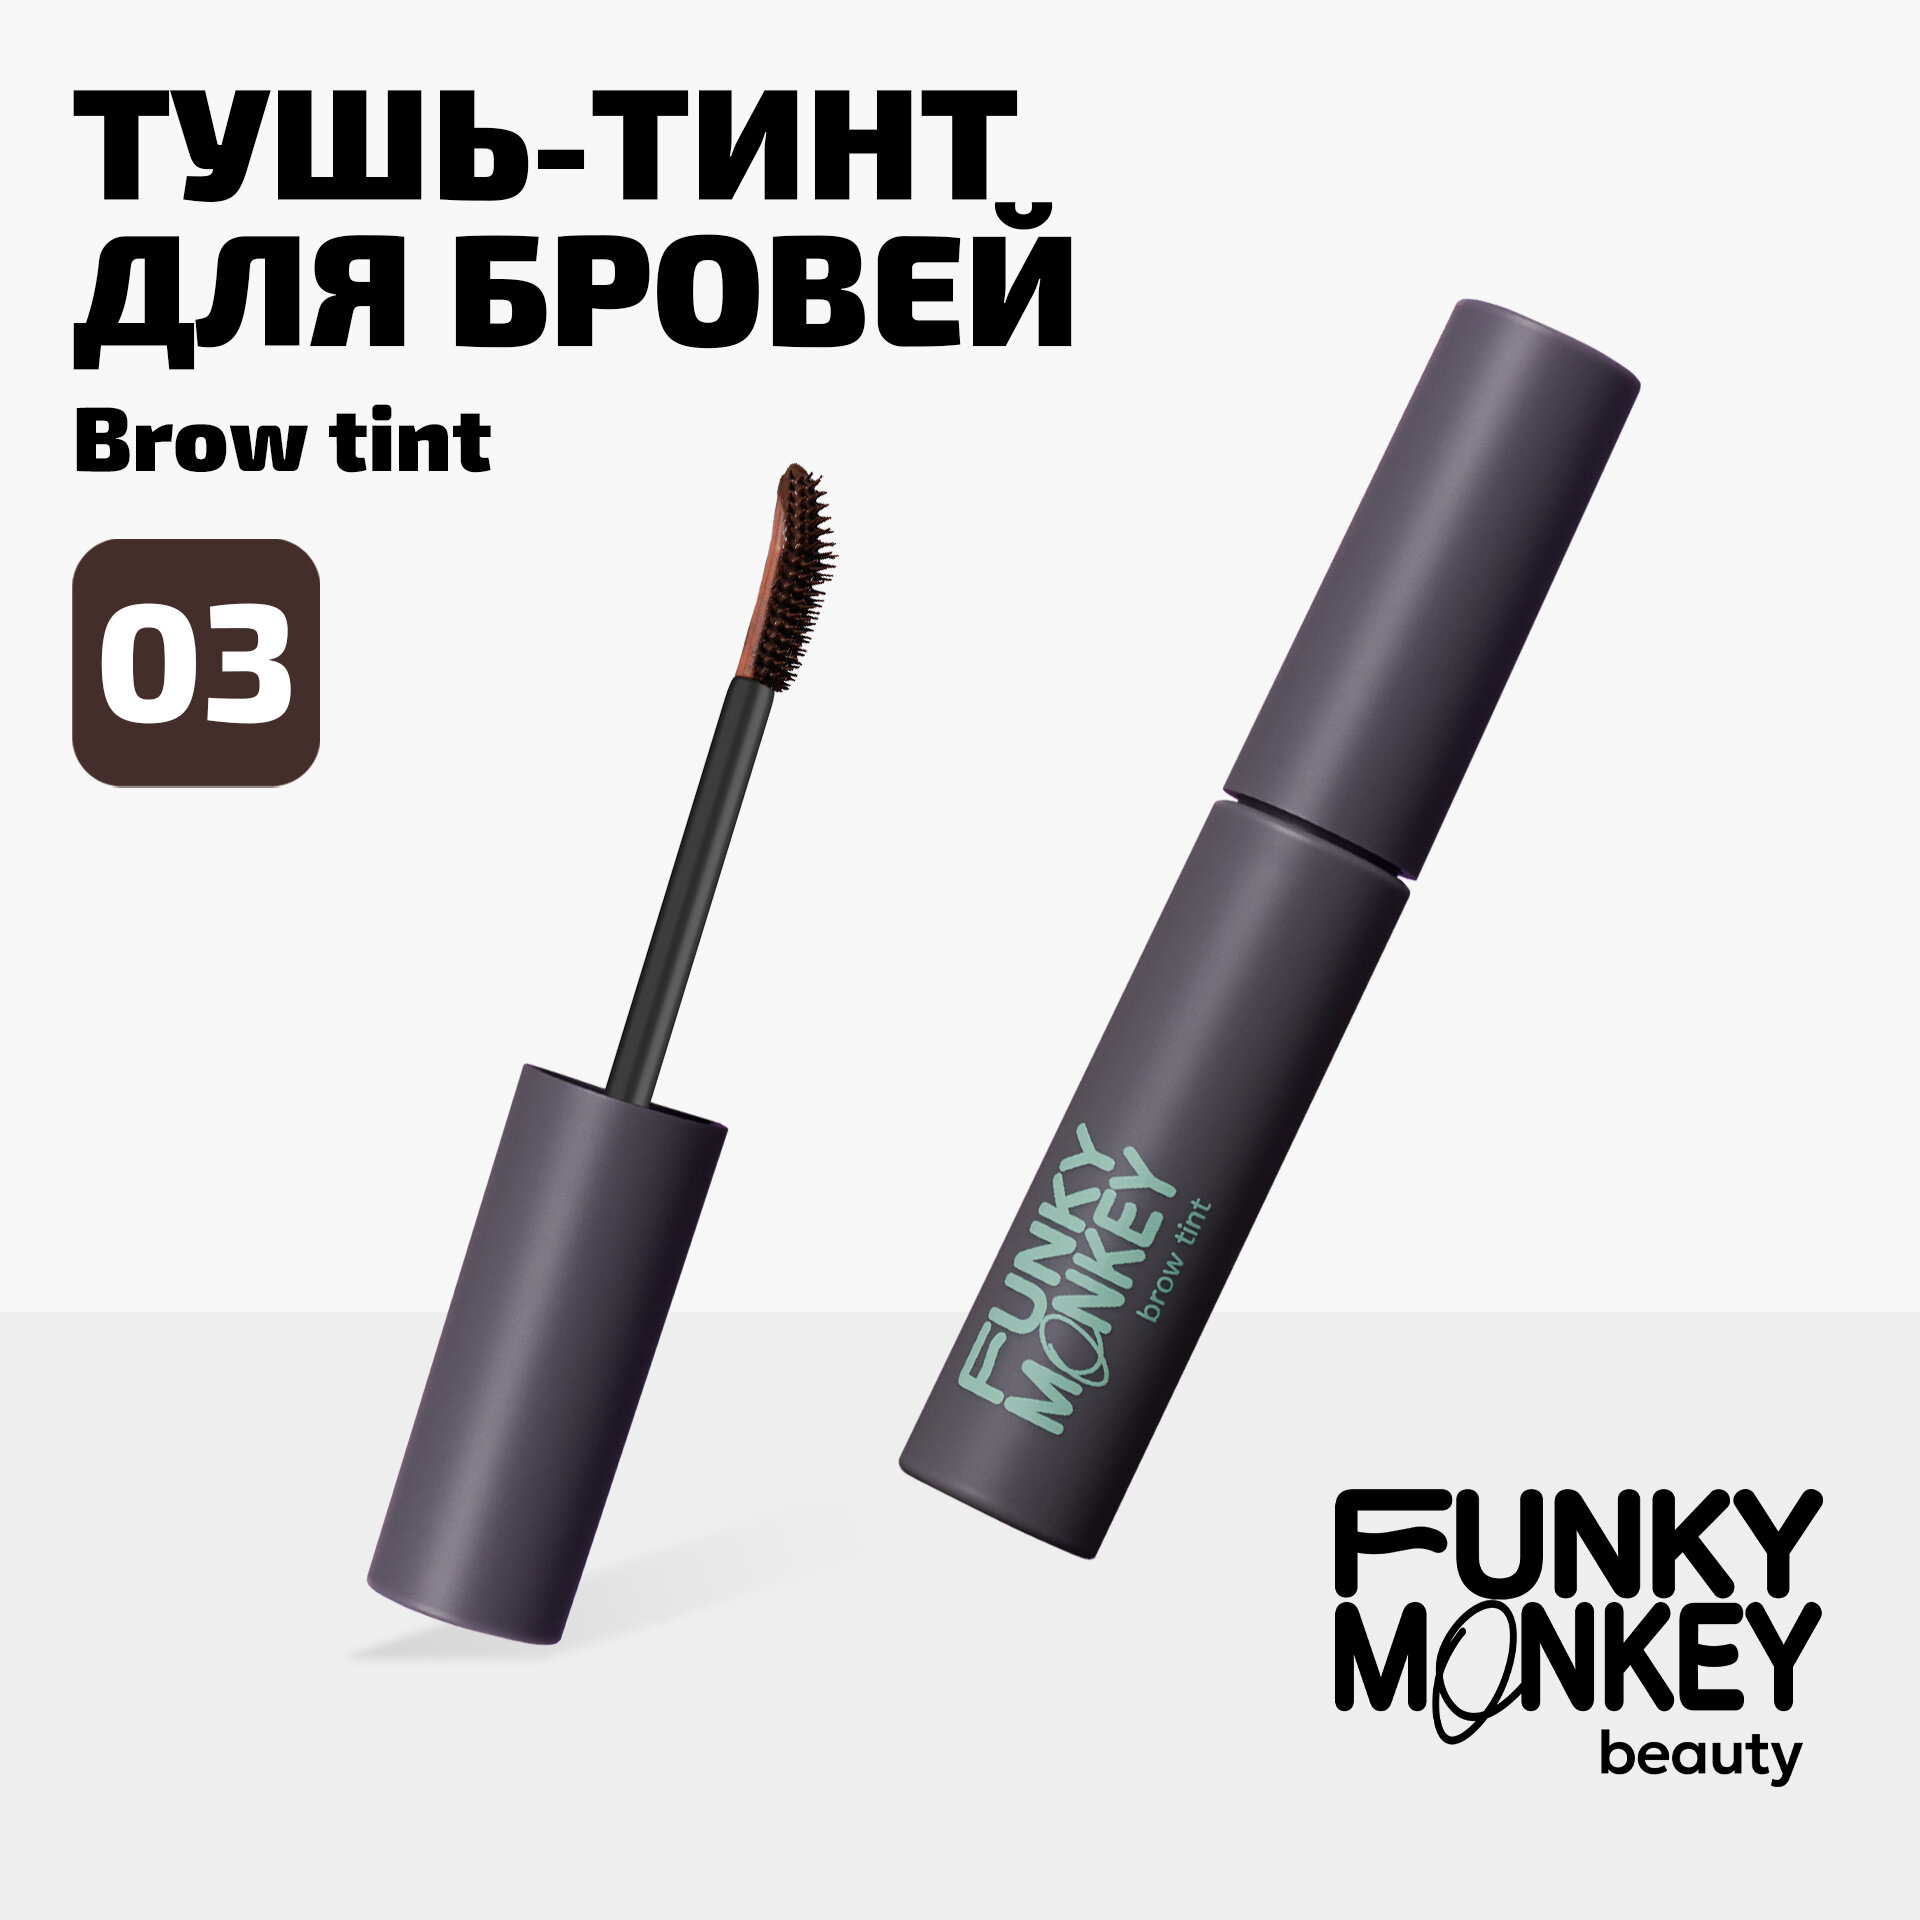 Funky Monkey Тушь-тинт для бровей Brow tint тон 03